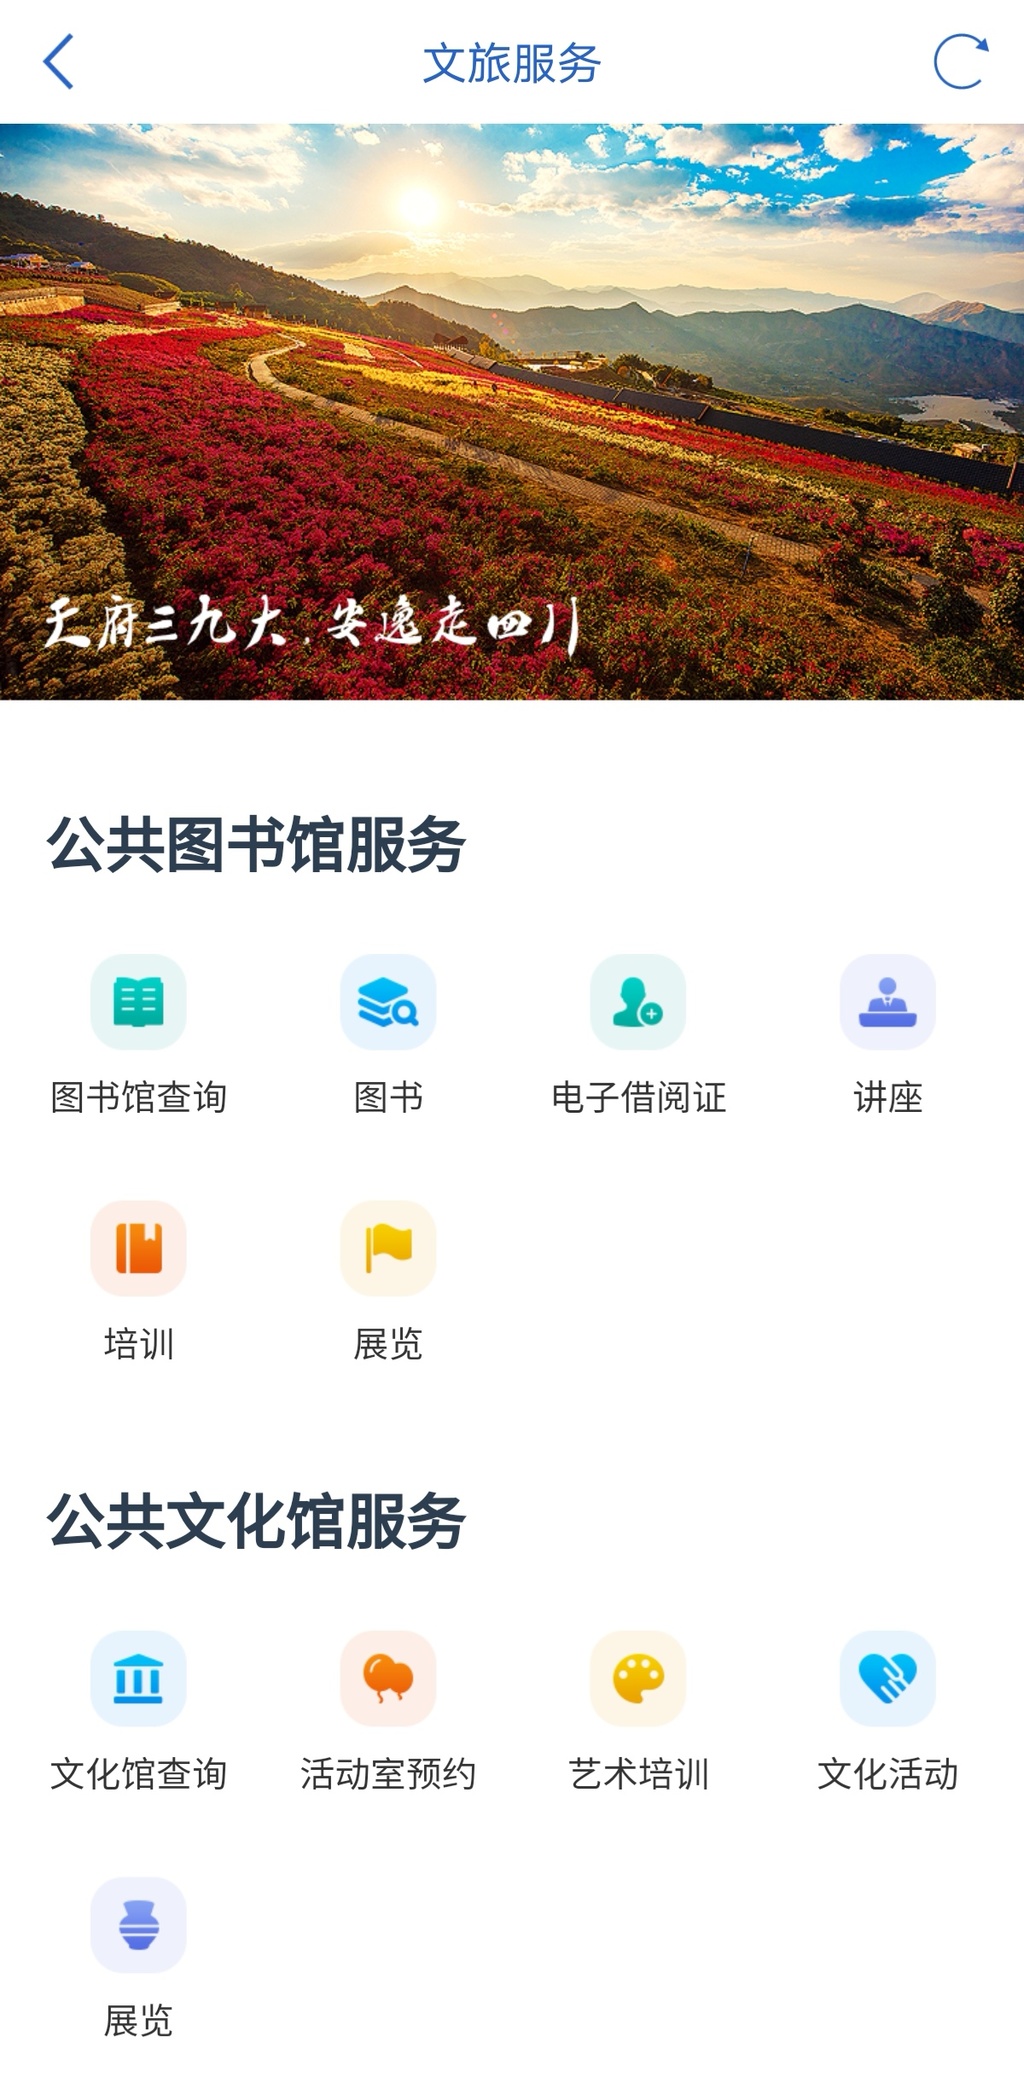 NG体育app：太方便了！川渝200多家图书馆可实现一站式查询借阅只需3步！(图3)